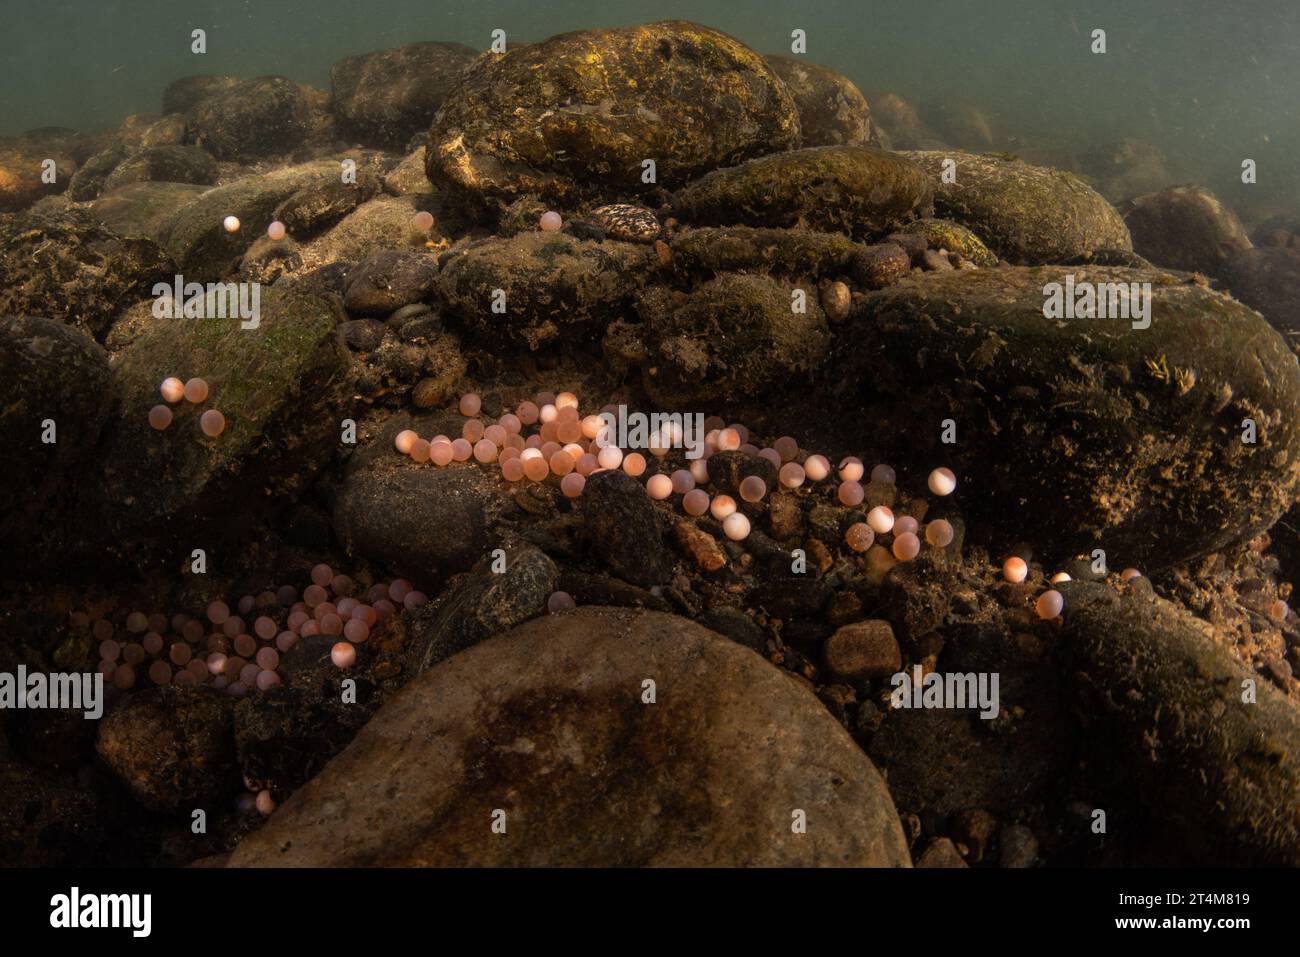 Le uova di un salmone Chinook (Oncorhynchus tshawytscha) sul letto del fiume durante la corsa del salmone del pacifico in California. Foto Stock